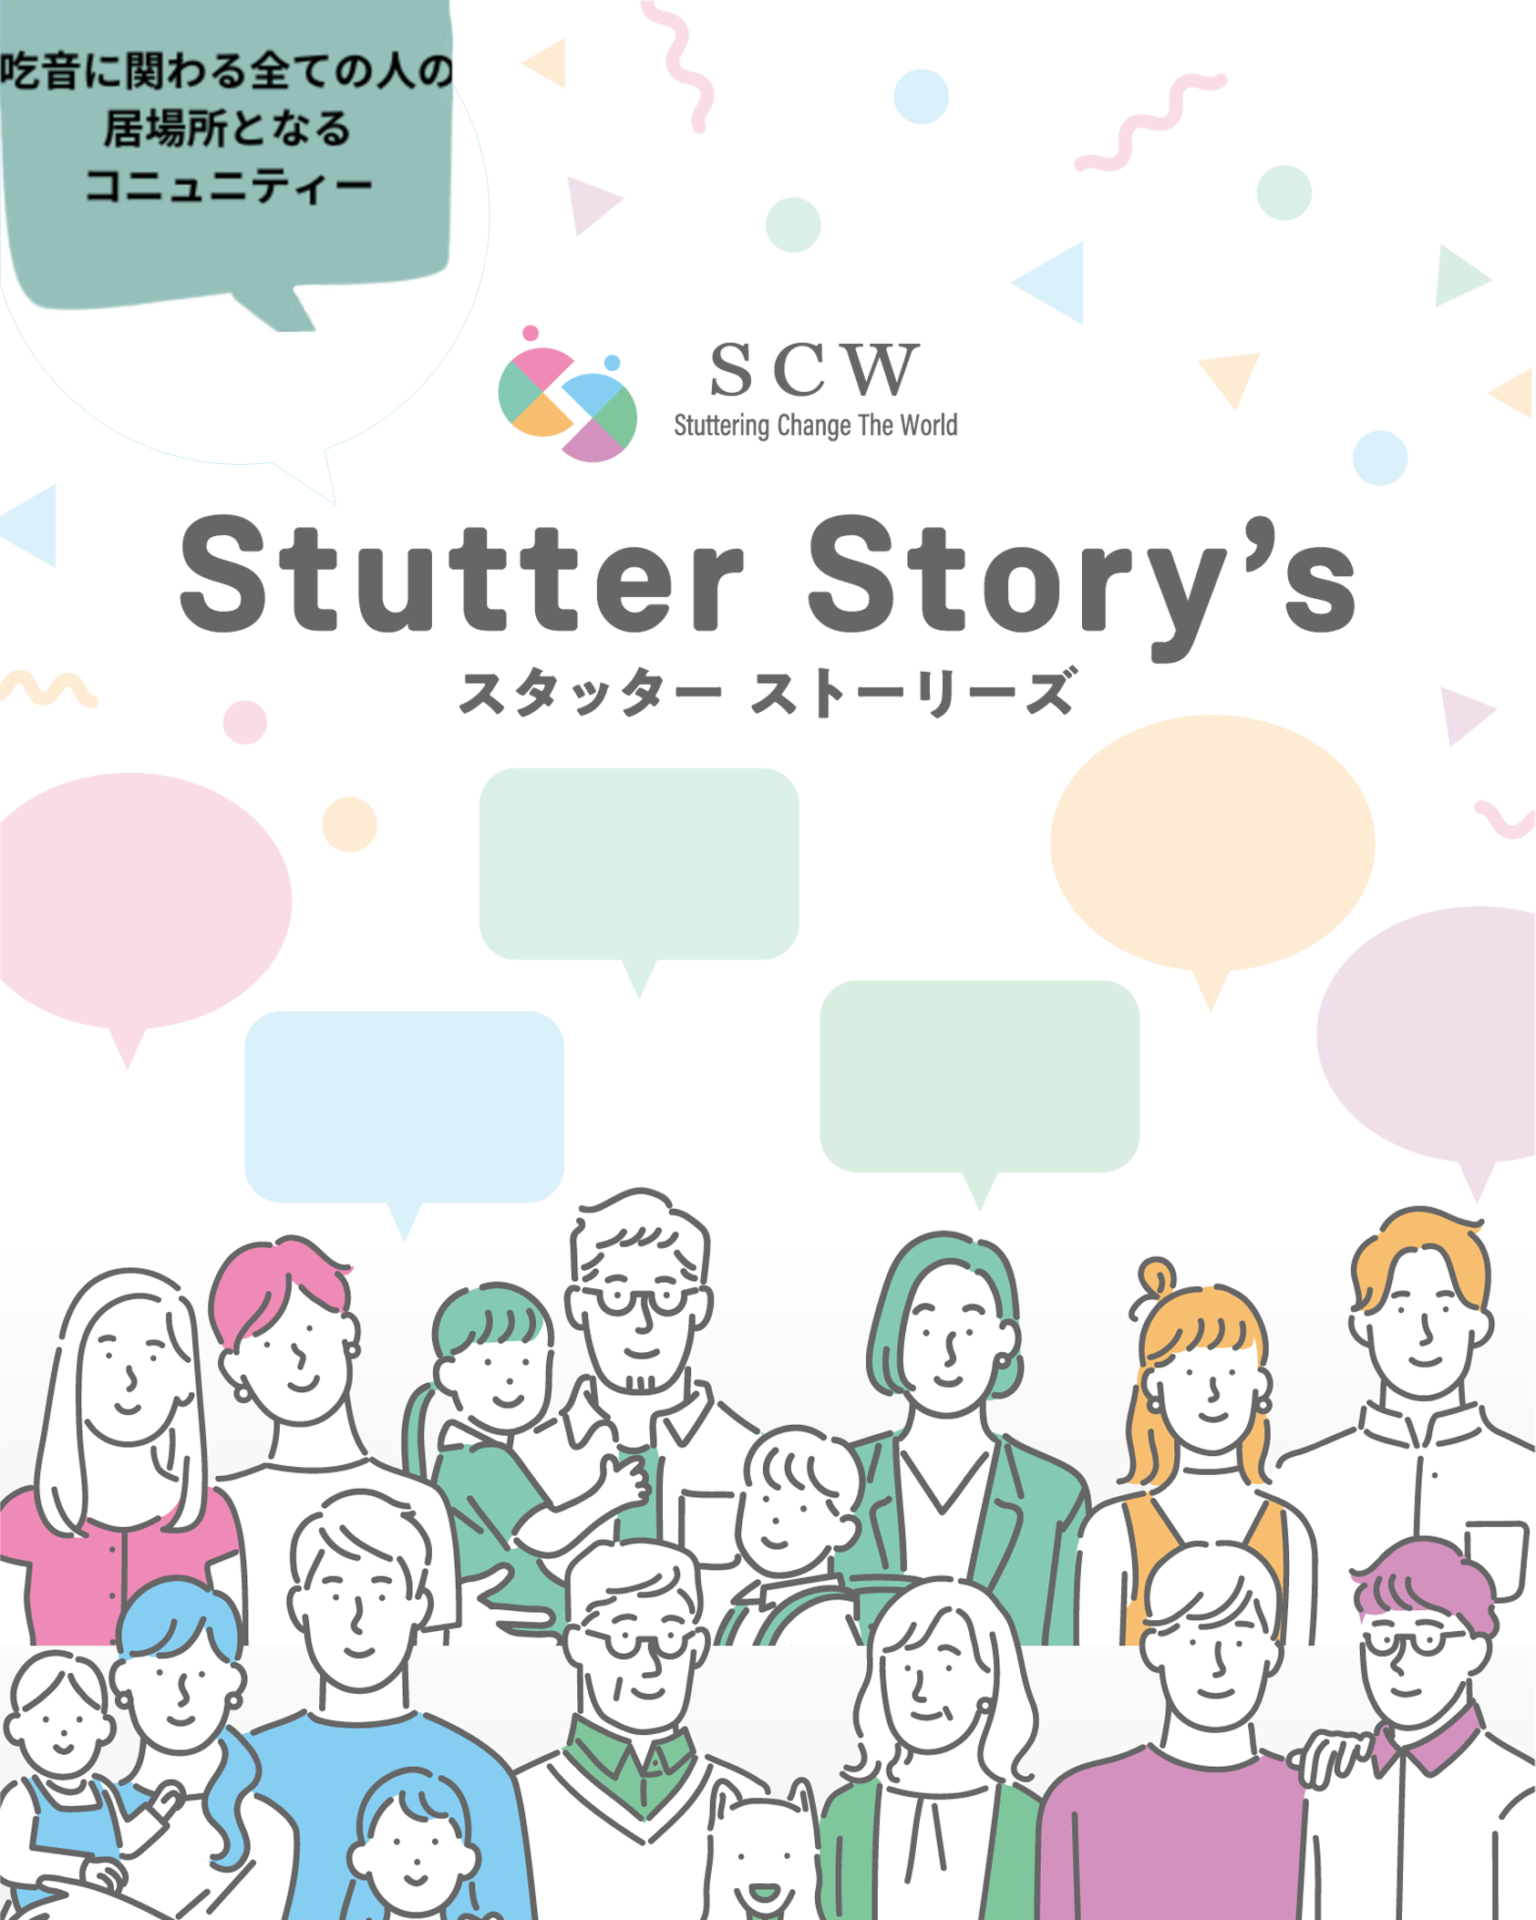 Stutter Story’s　スタッター ストーリーズ 吃音者の吃音者による吃音者のためのサロン